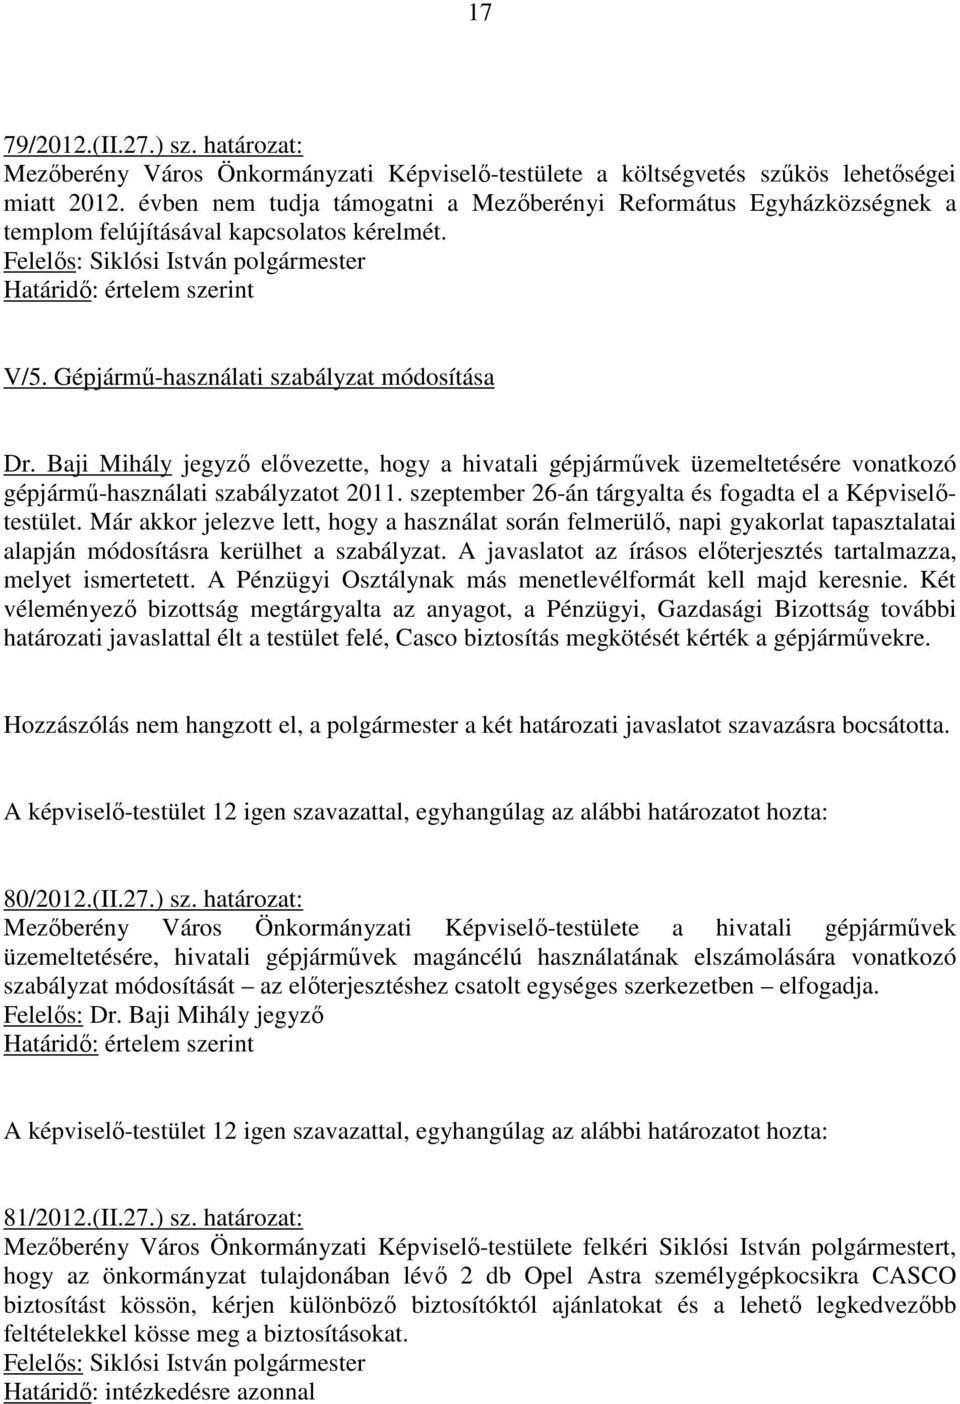 Baji Mihály jegyzı elıvezette, hogy a hivatali gépjármővek üzemeltetésére vonatkozó gépjármő-használati szabályzatot 2011. szeptember 26-án tárgyalta és fogadta el a Képviselıtestület.